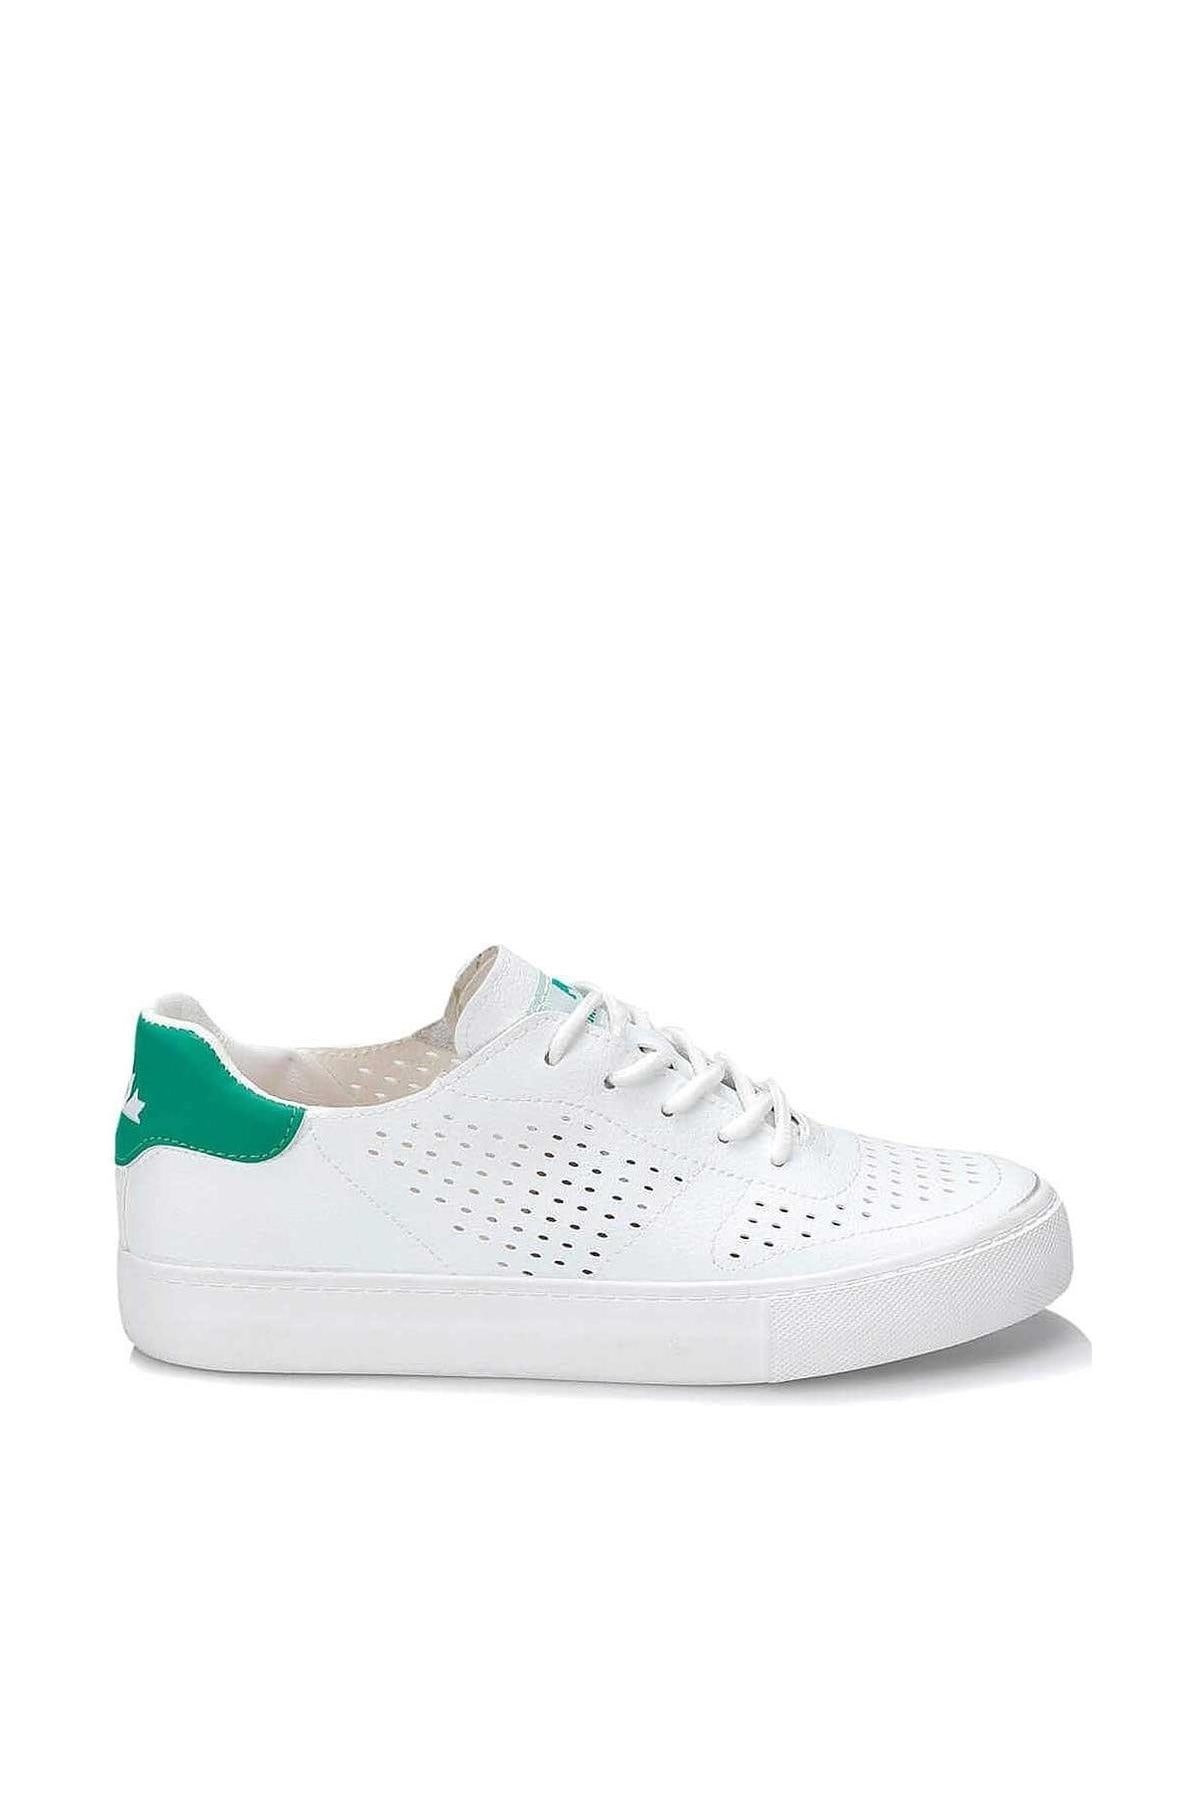 Lumberjack Victoria Beyaz Yeşil Bayan Günlük Spor Ayakkabı